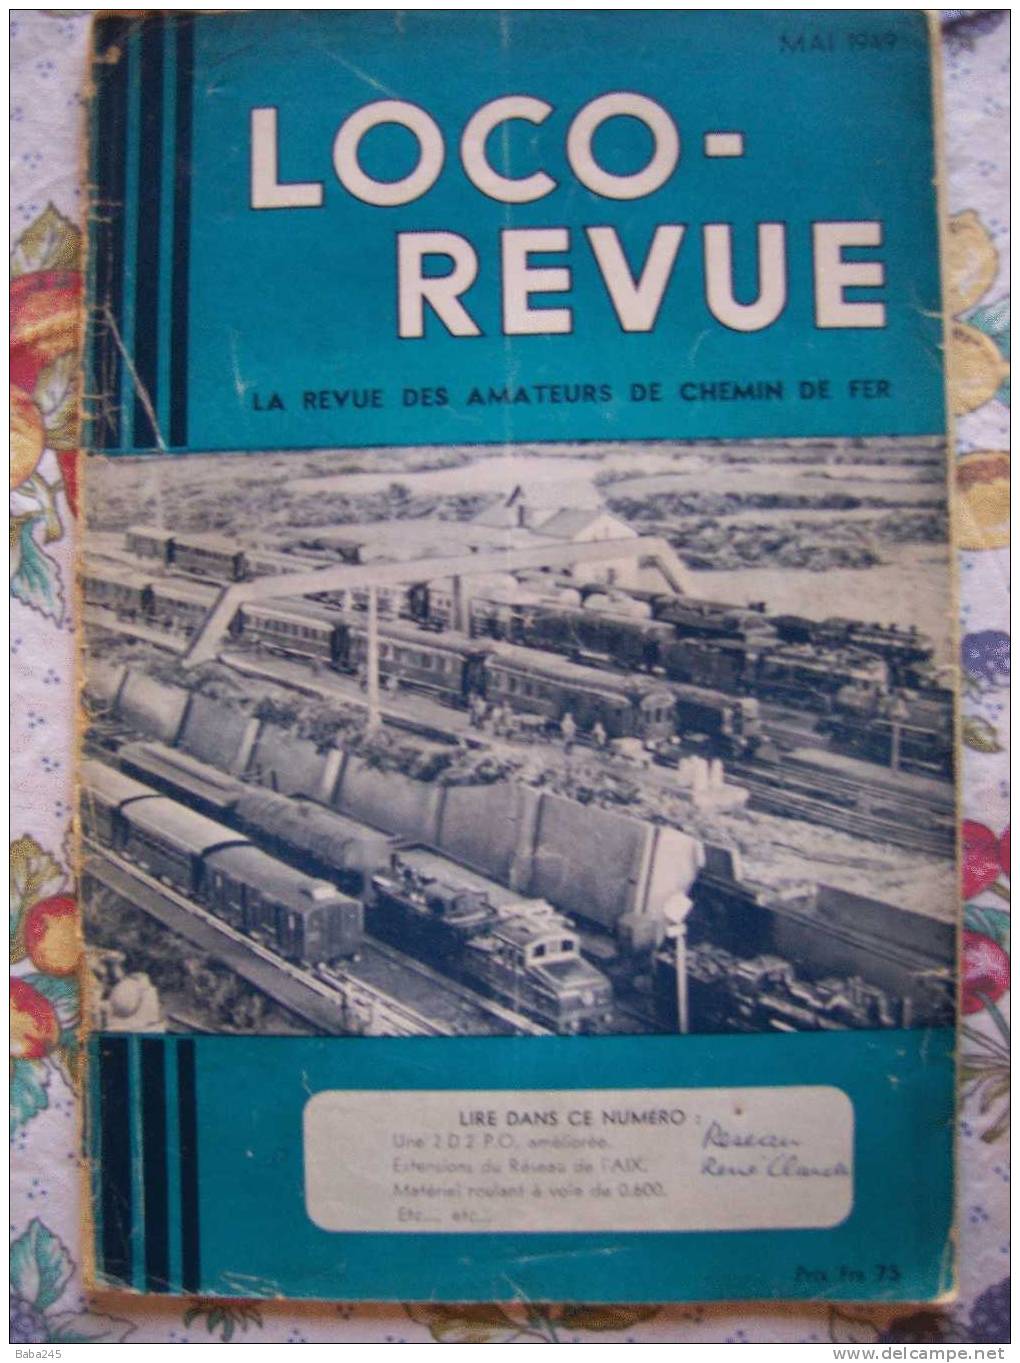 LOCO REVUE MAI 1949 UN FUTUR RESEAU A VOIE DE 0.60 - Trains